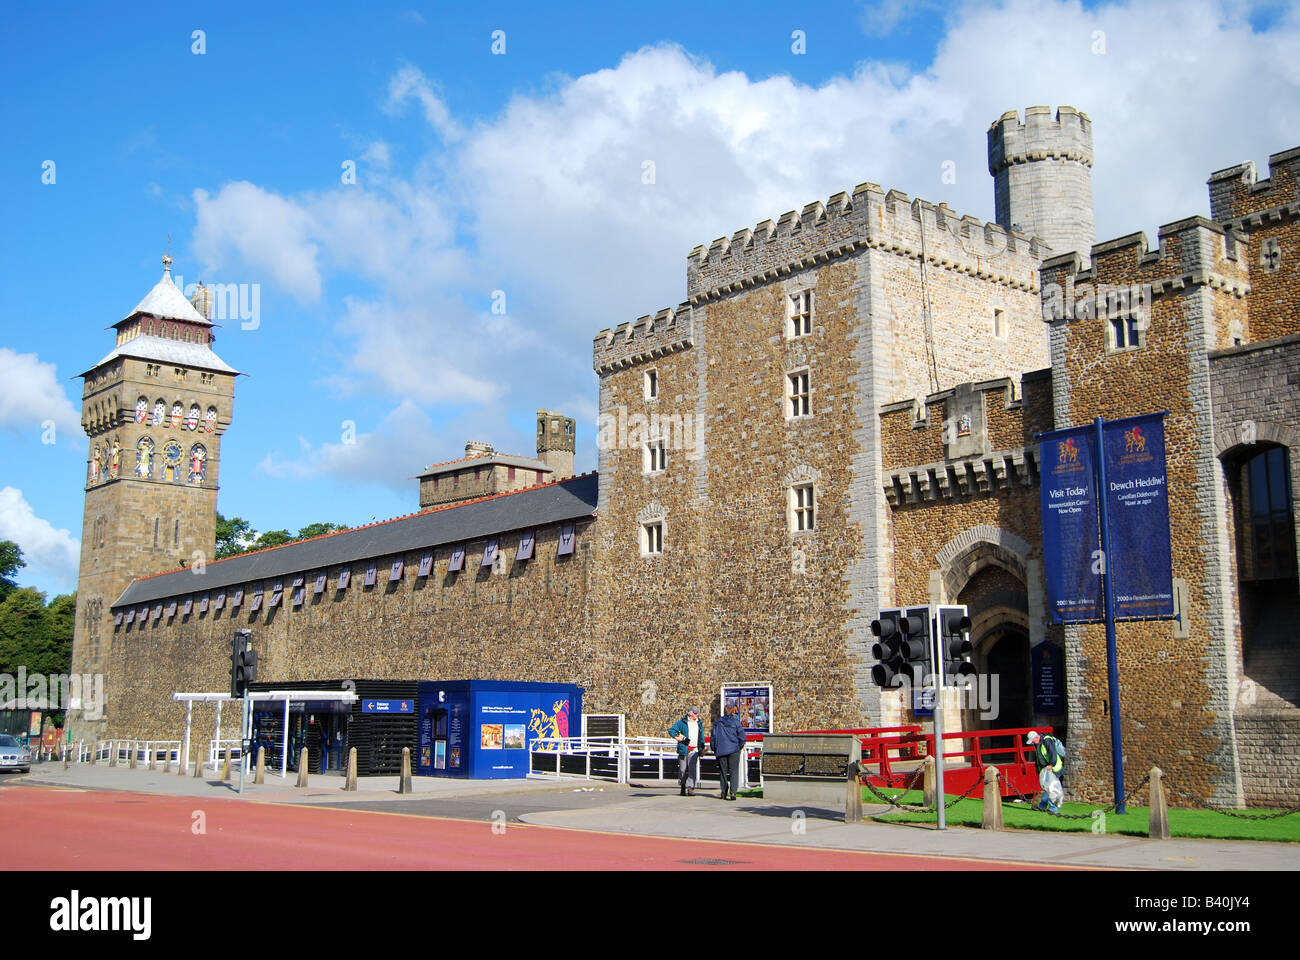 Ingresso al castello, Castello di Cardiff, Cardiff Wales, Regno Unito Foto Stock